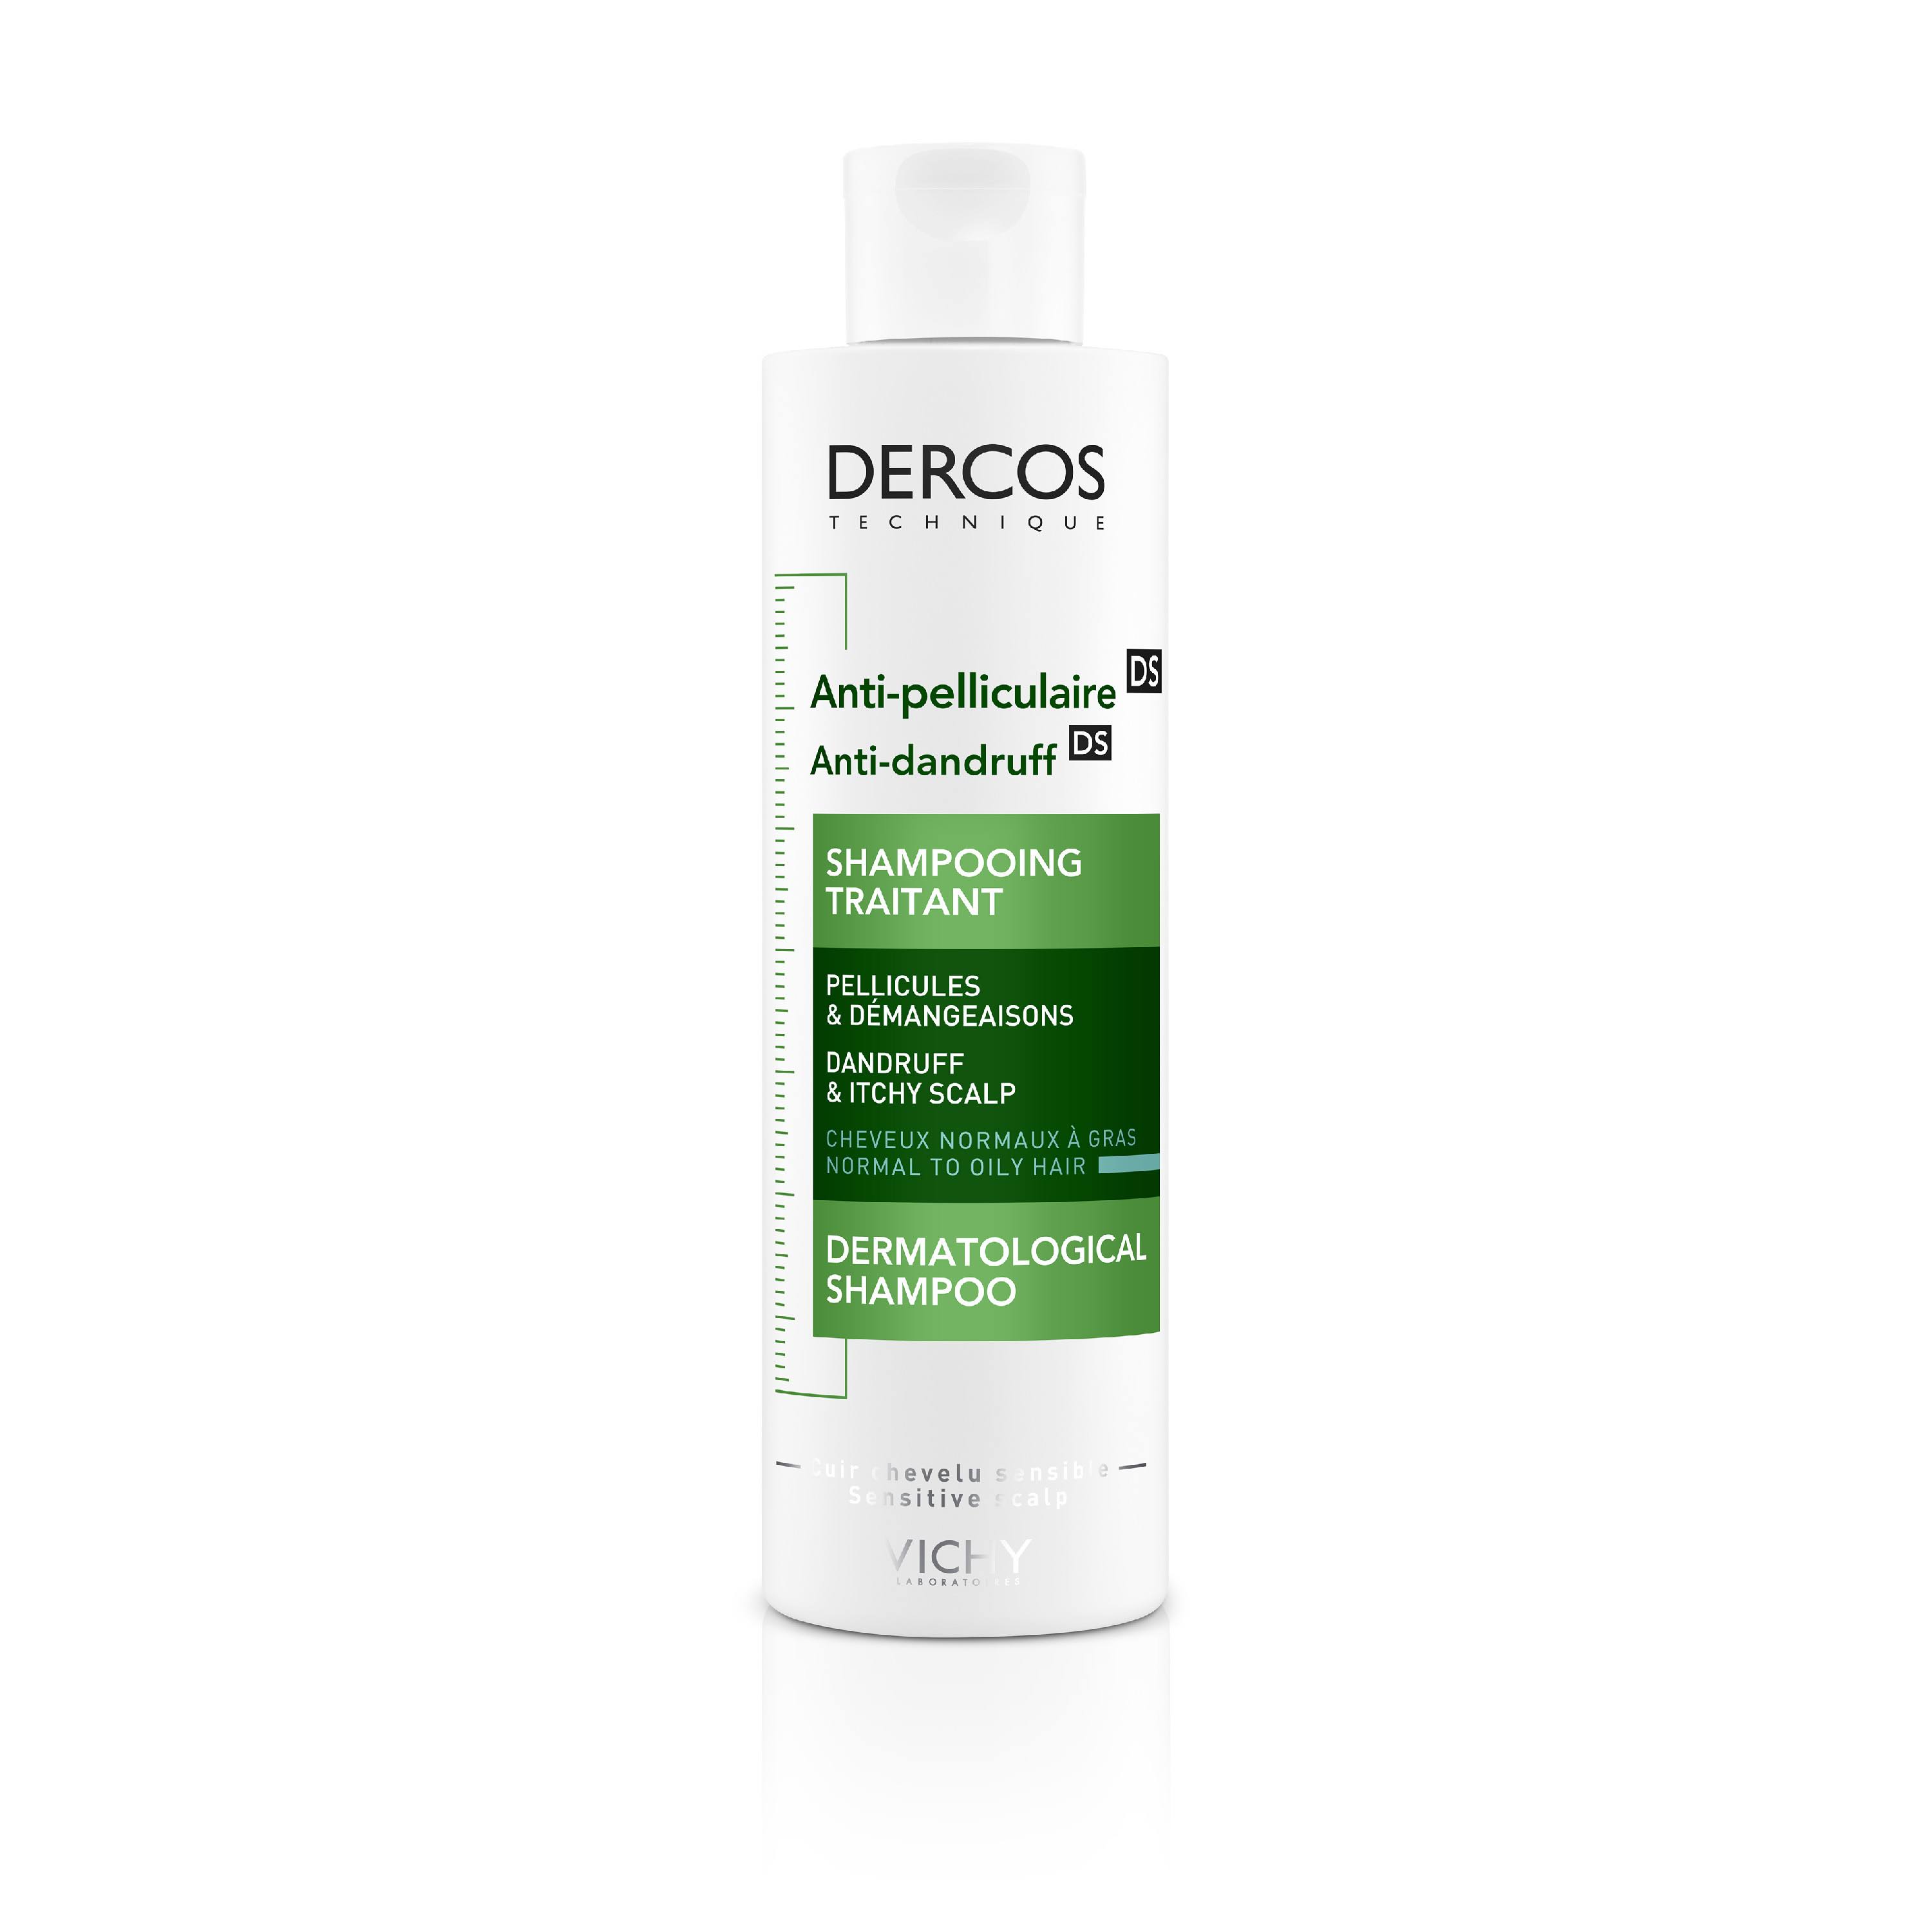 Vichy Dercos Anti-Dandruff Normal to Oily Hair Shampoo - 200ml